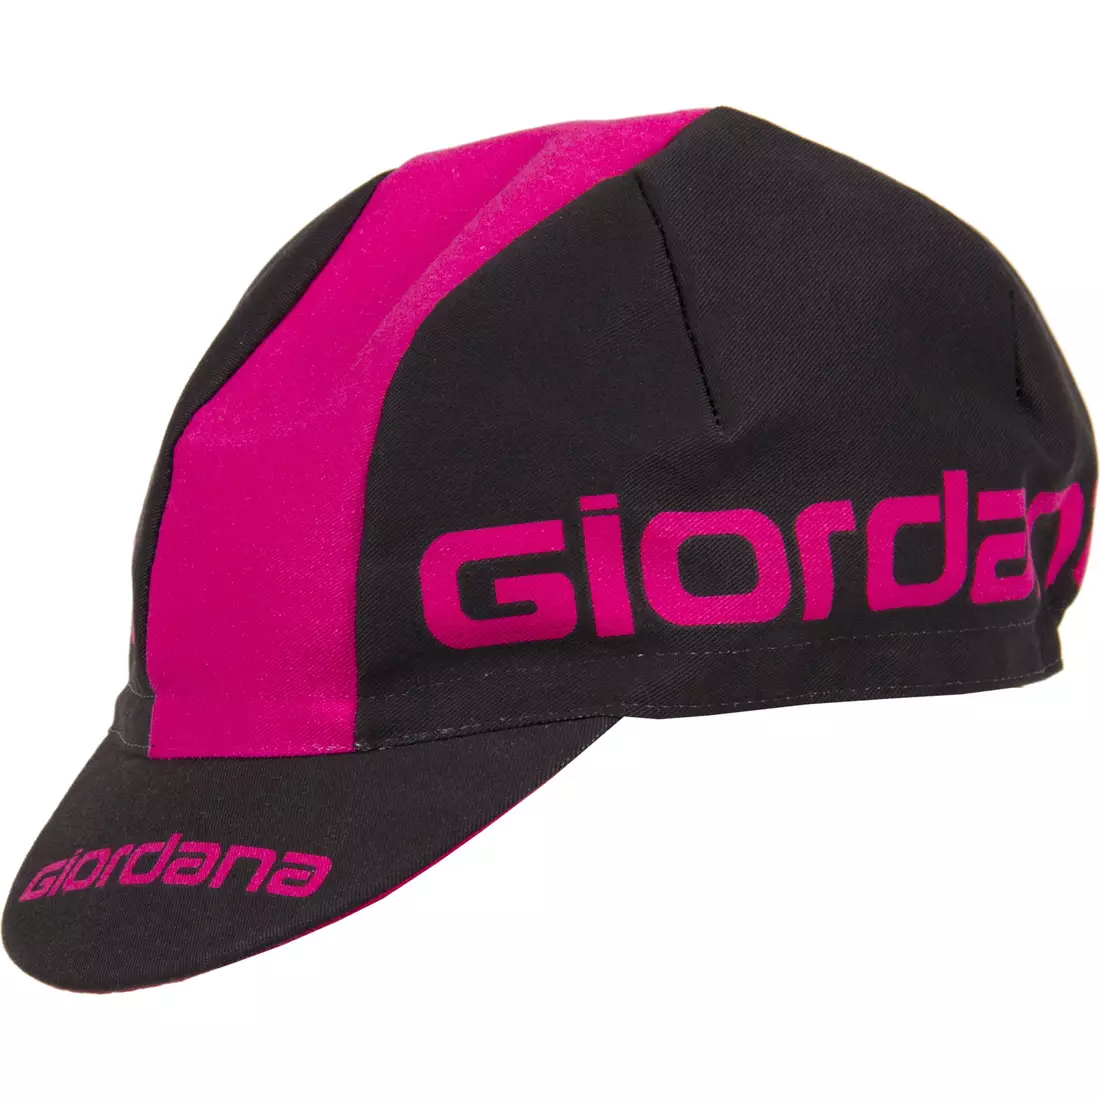 GIORDANA SS18 kerékpáros sapka - Giordana logó - fekete/rózsaszín GI-S5-COCA-GIOR-BKPK egy méret